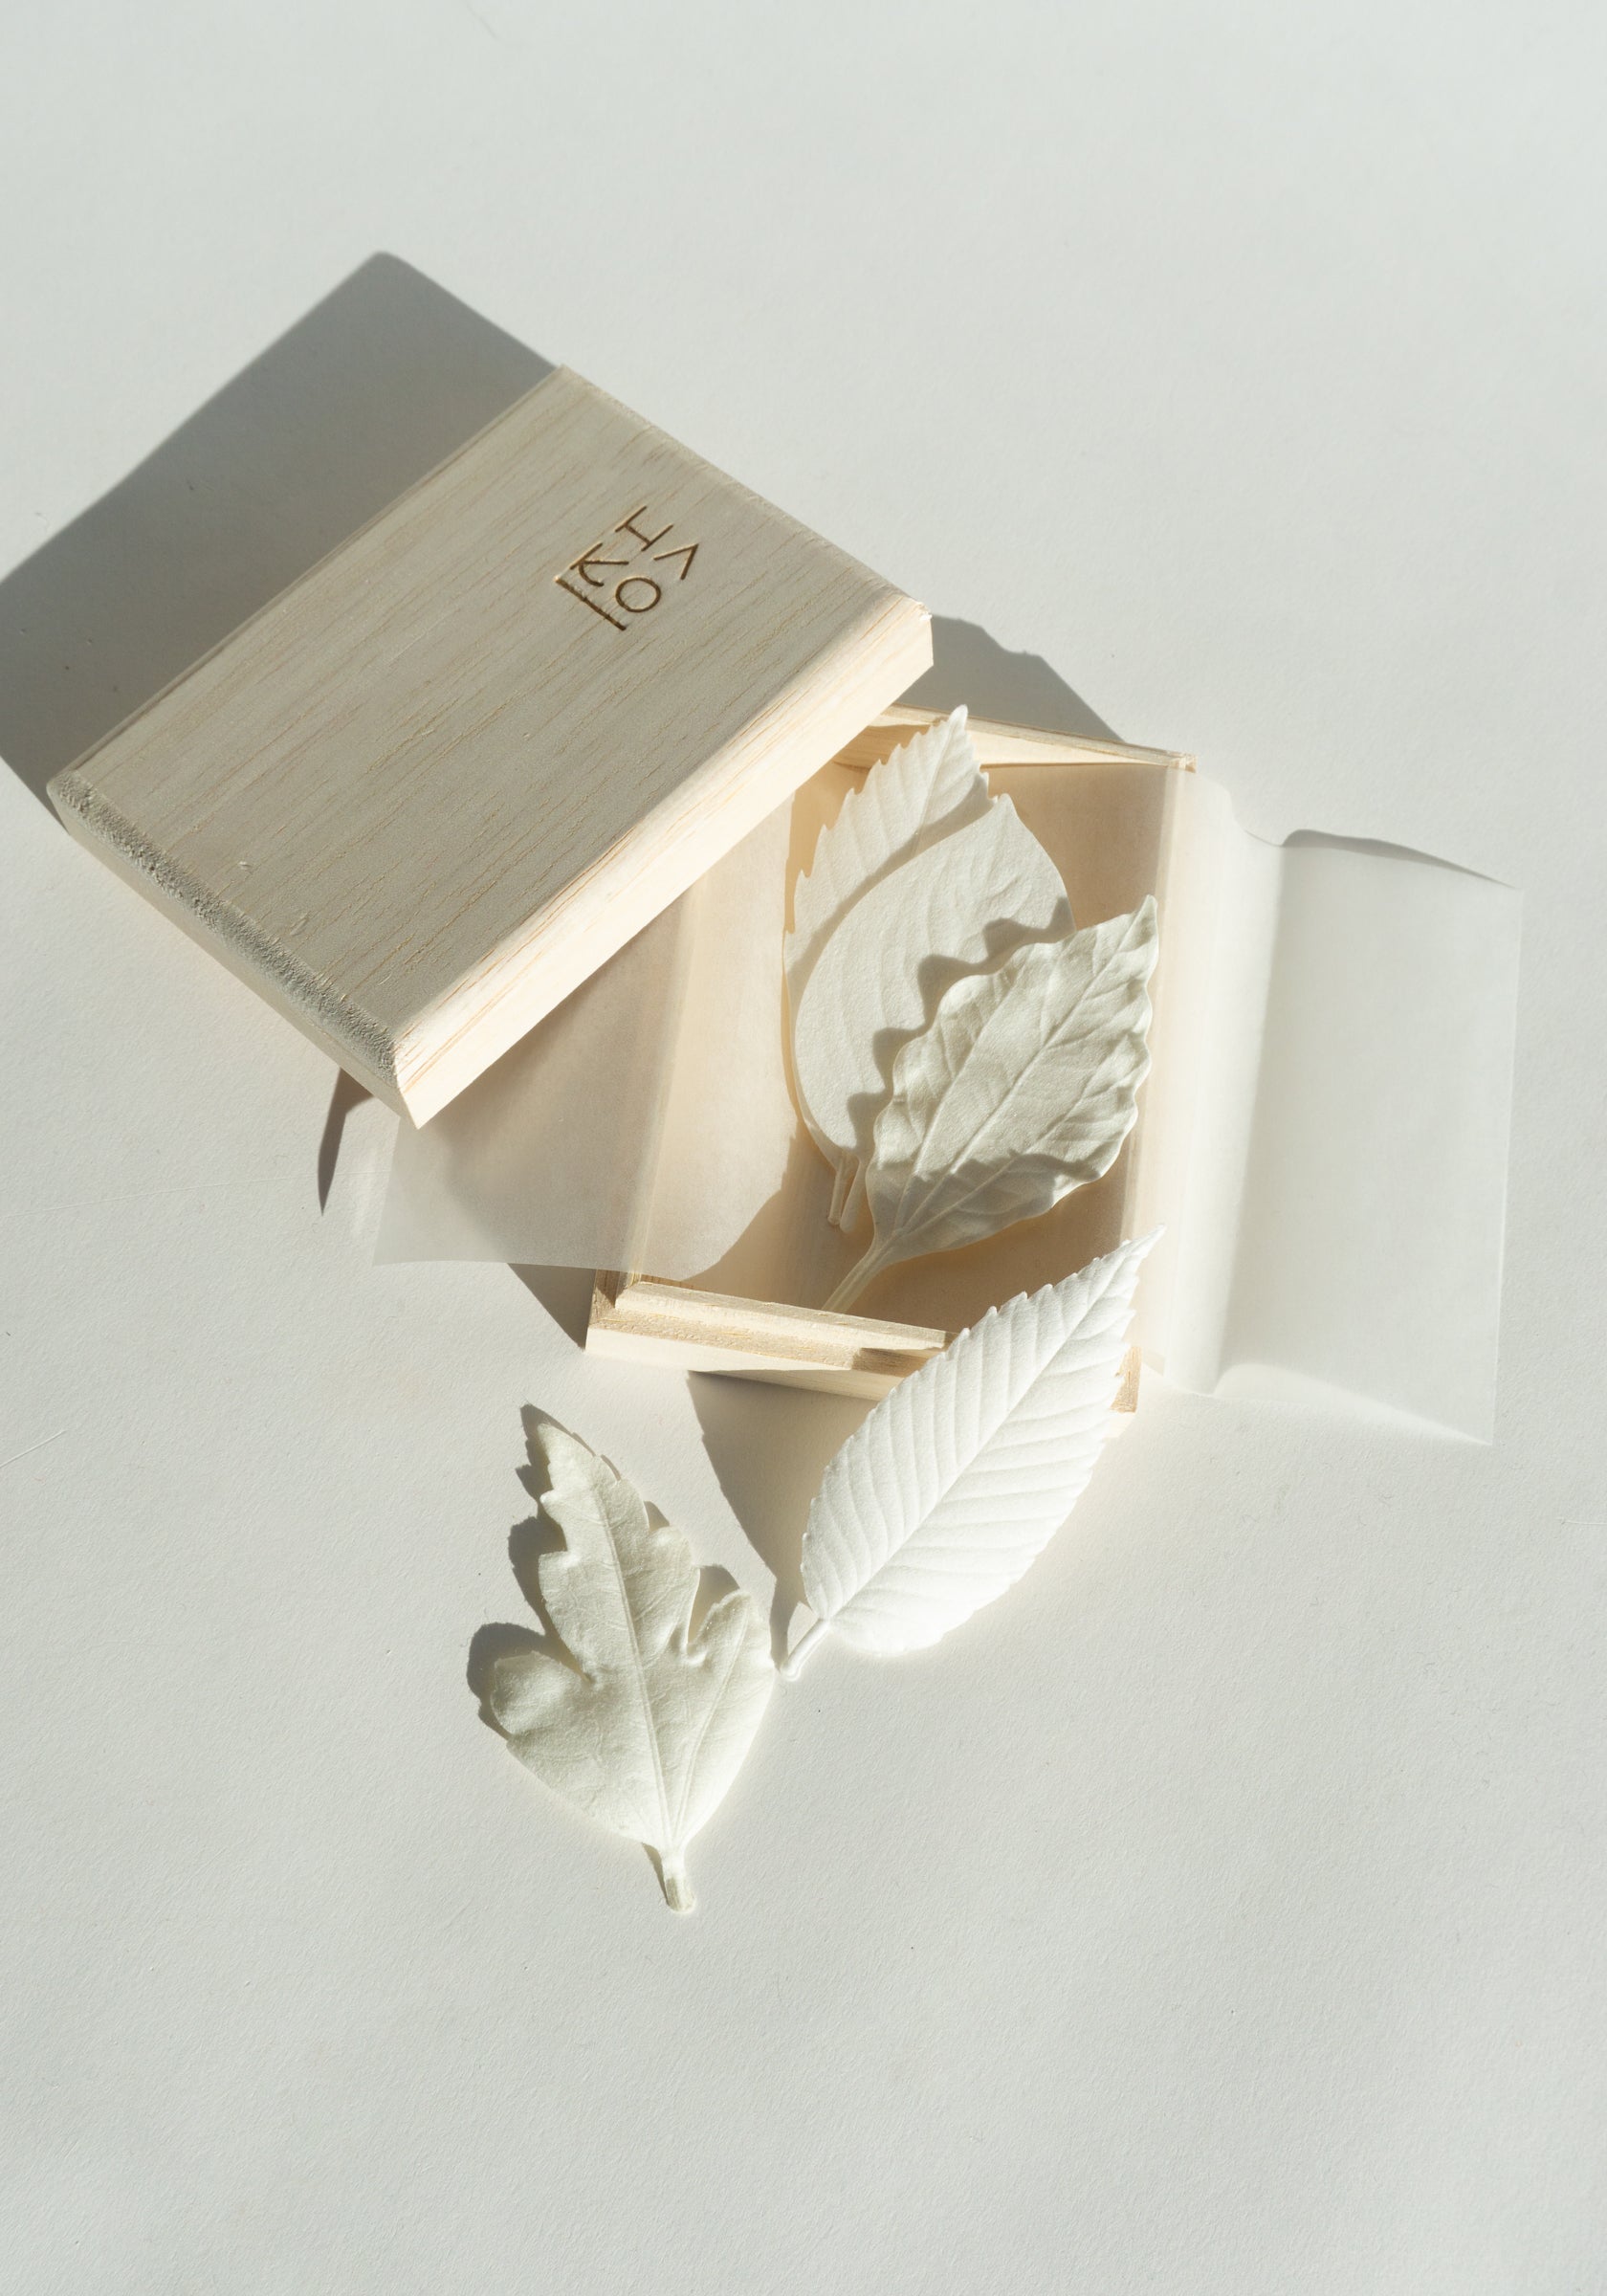 Morihata HA KO Paper Incense Box